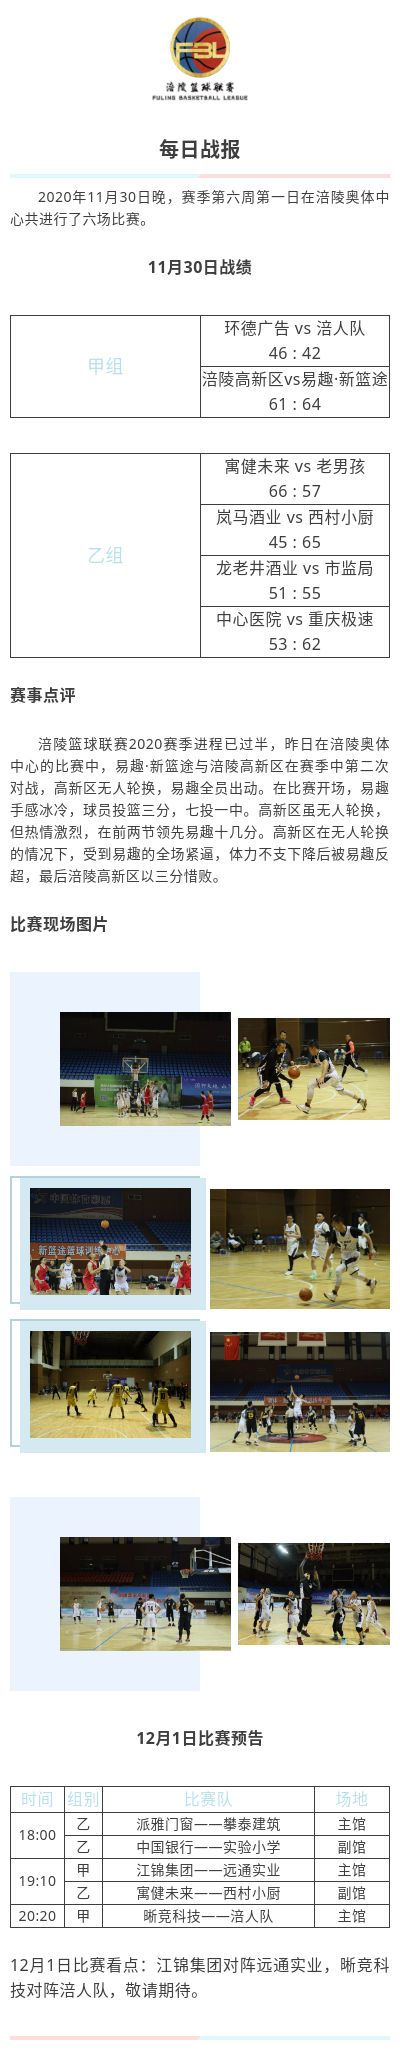 涪陵高新区·涪陵篮球联赛（FBL）2020赛季每日战报11.30